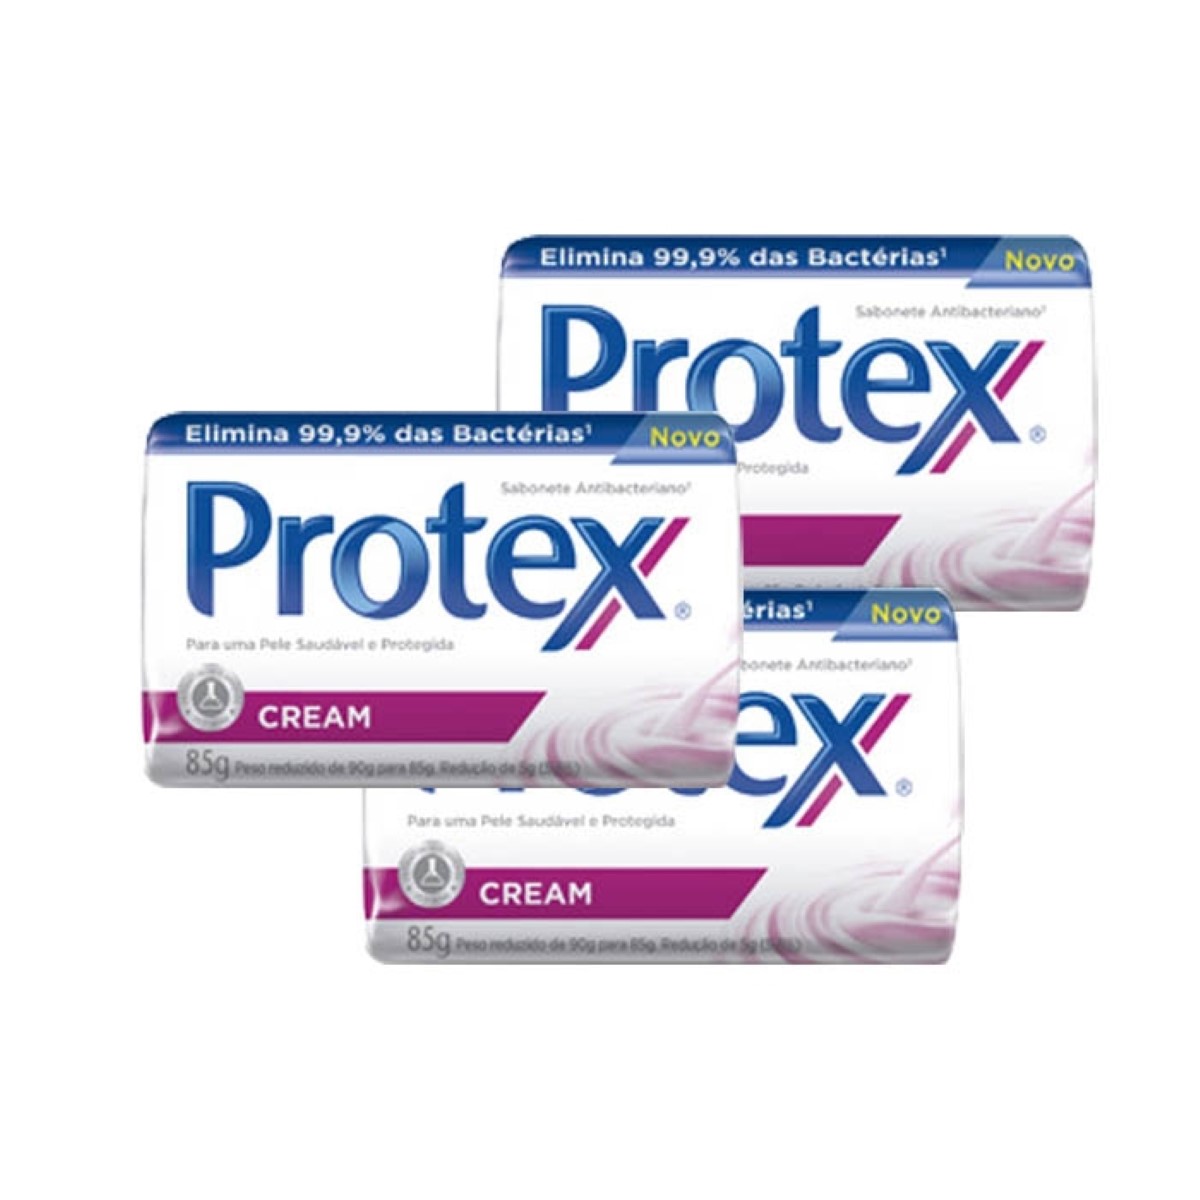 3 Sabonetes Protex Cream 85g cada - Protex